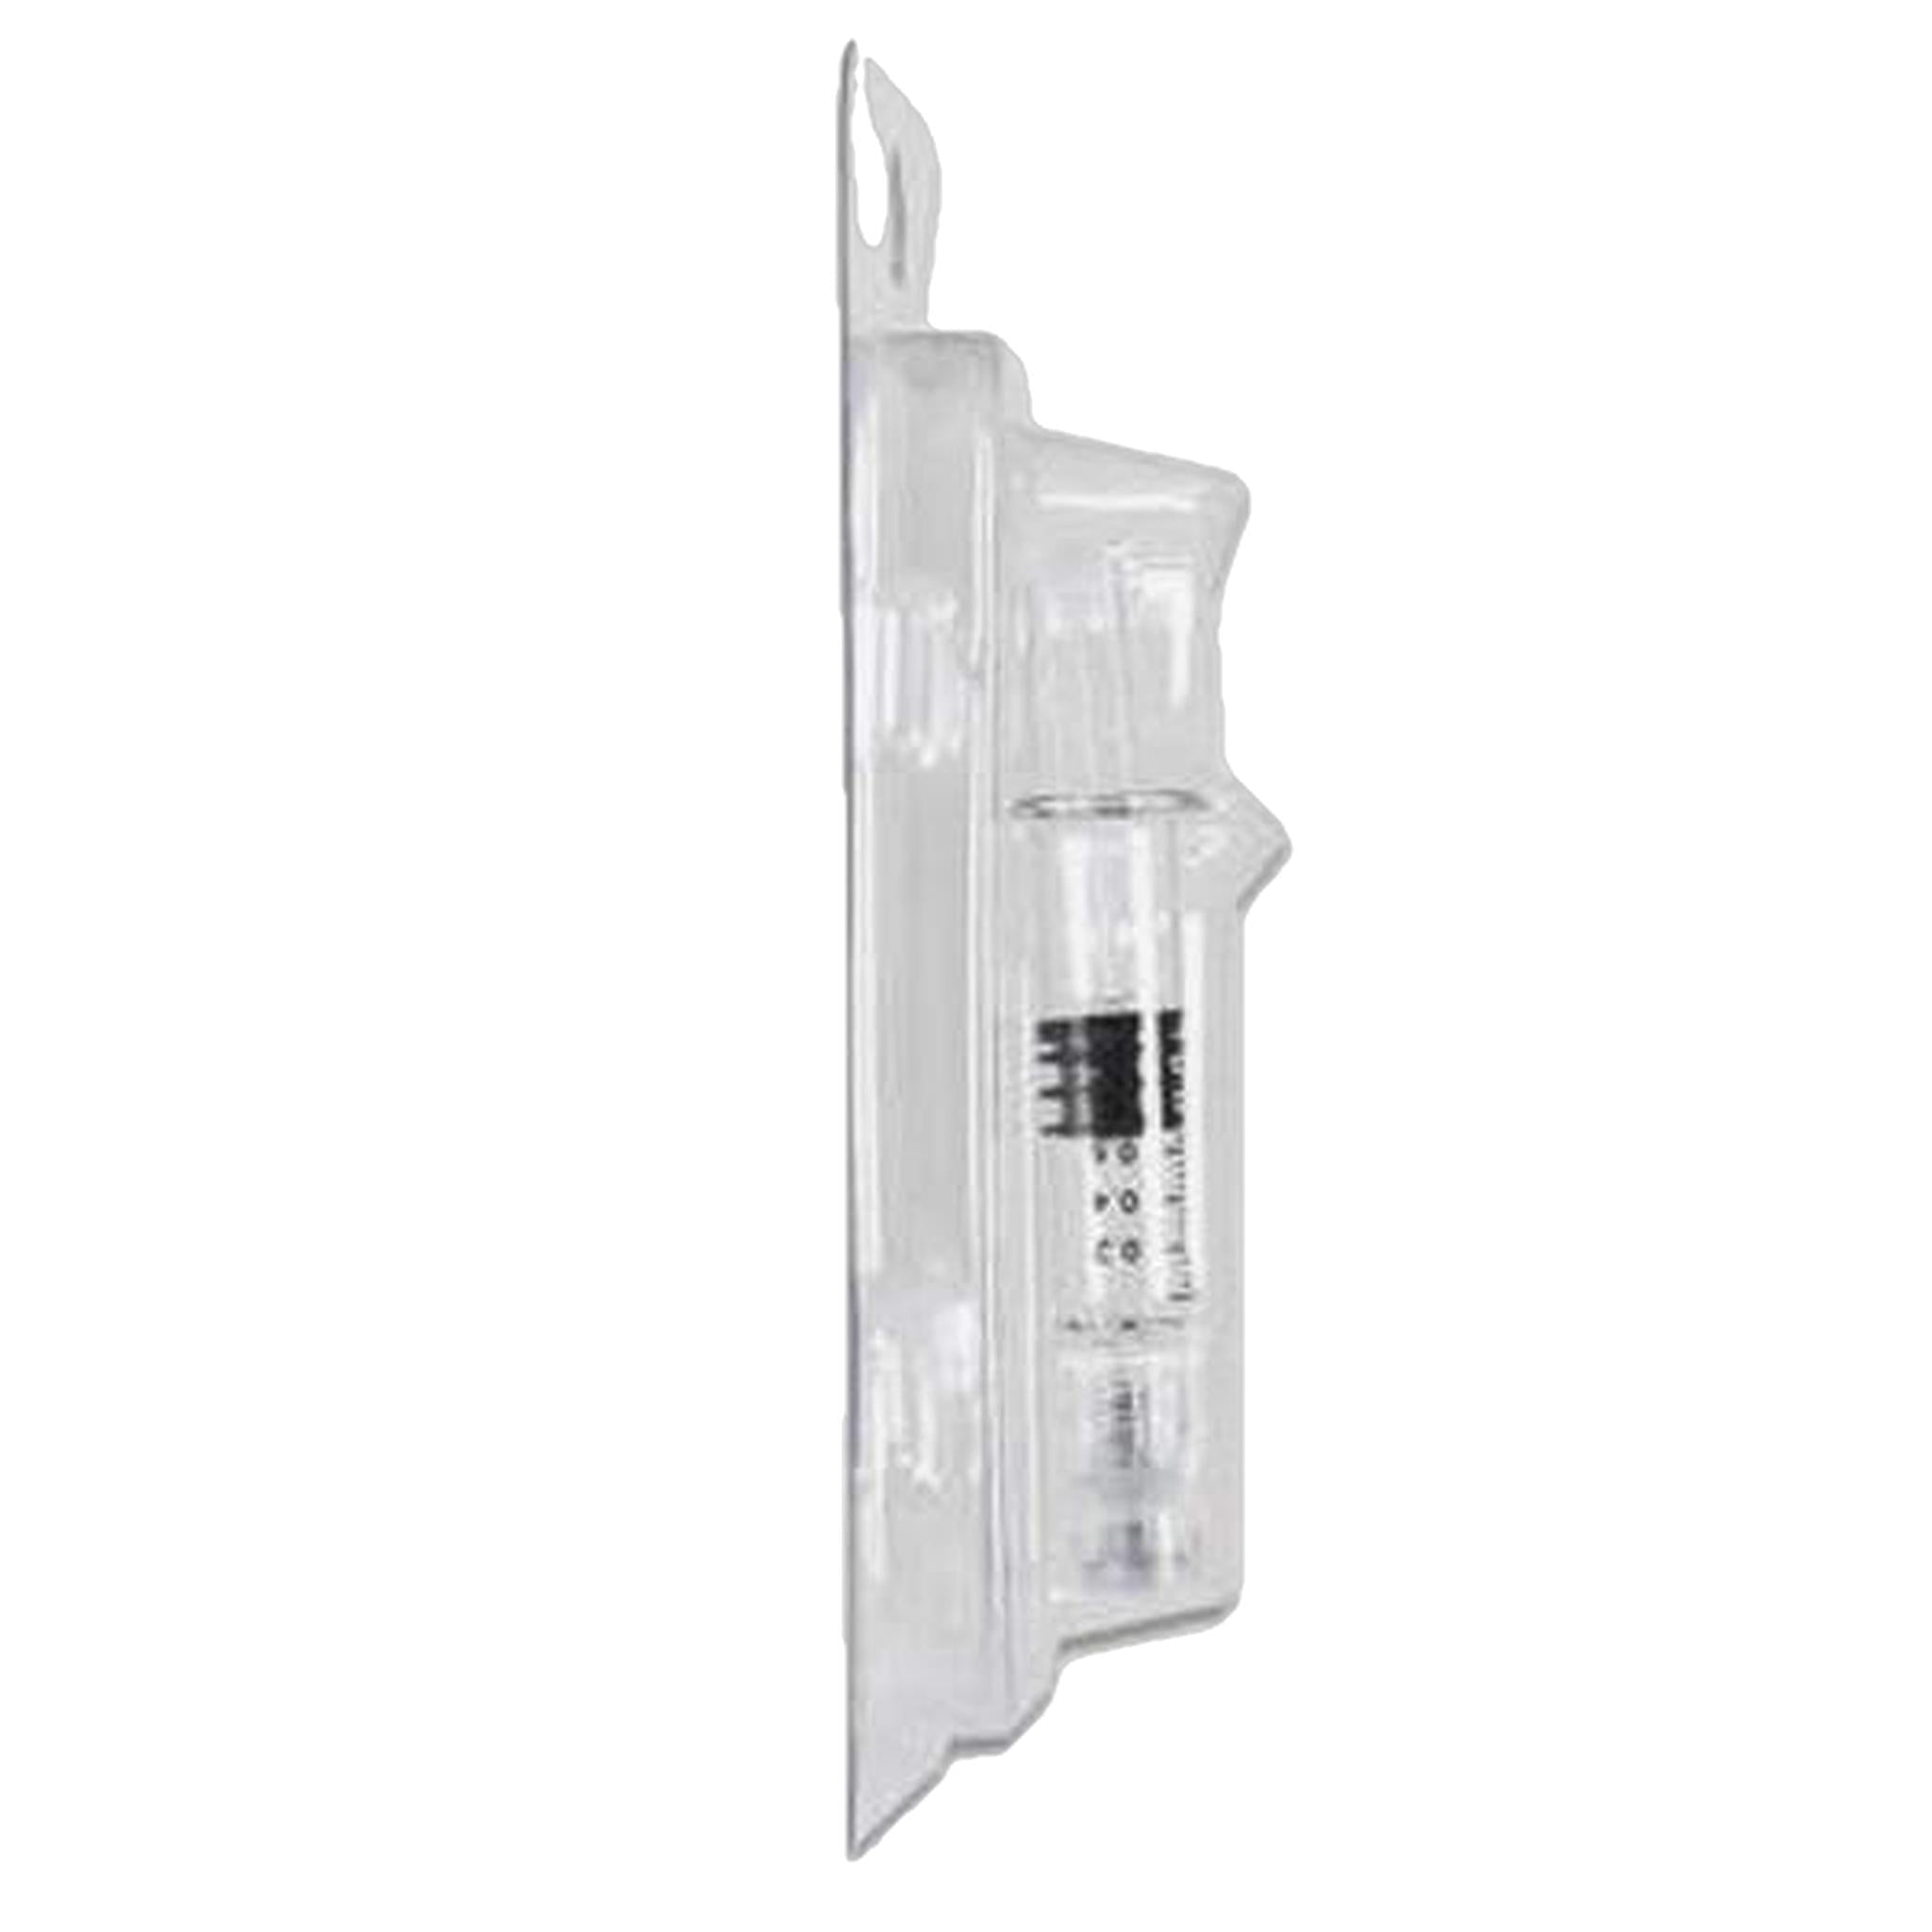 Blank Clamshell Blister Packaging for 1mL Syringe-Syringe-Vape Pens Wholesale